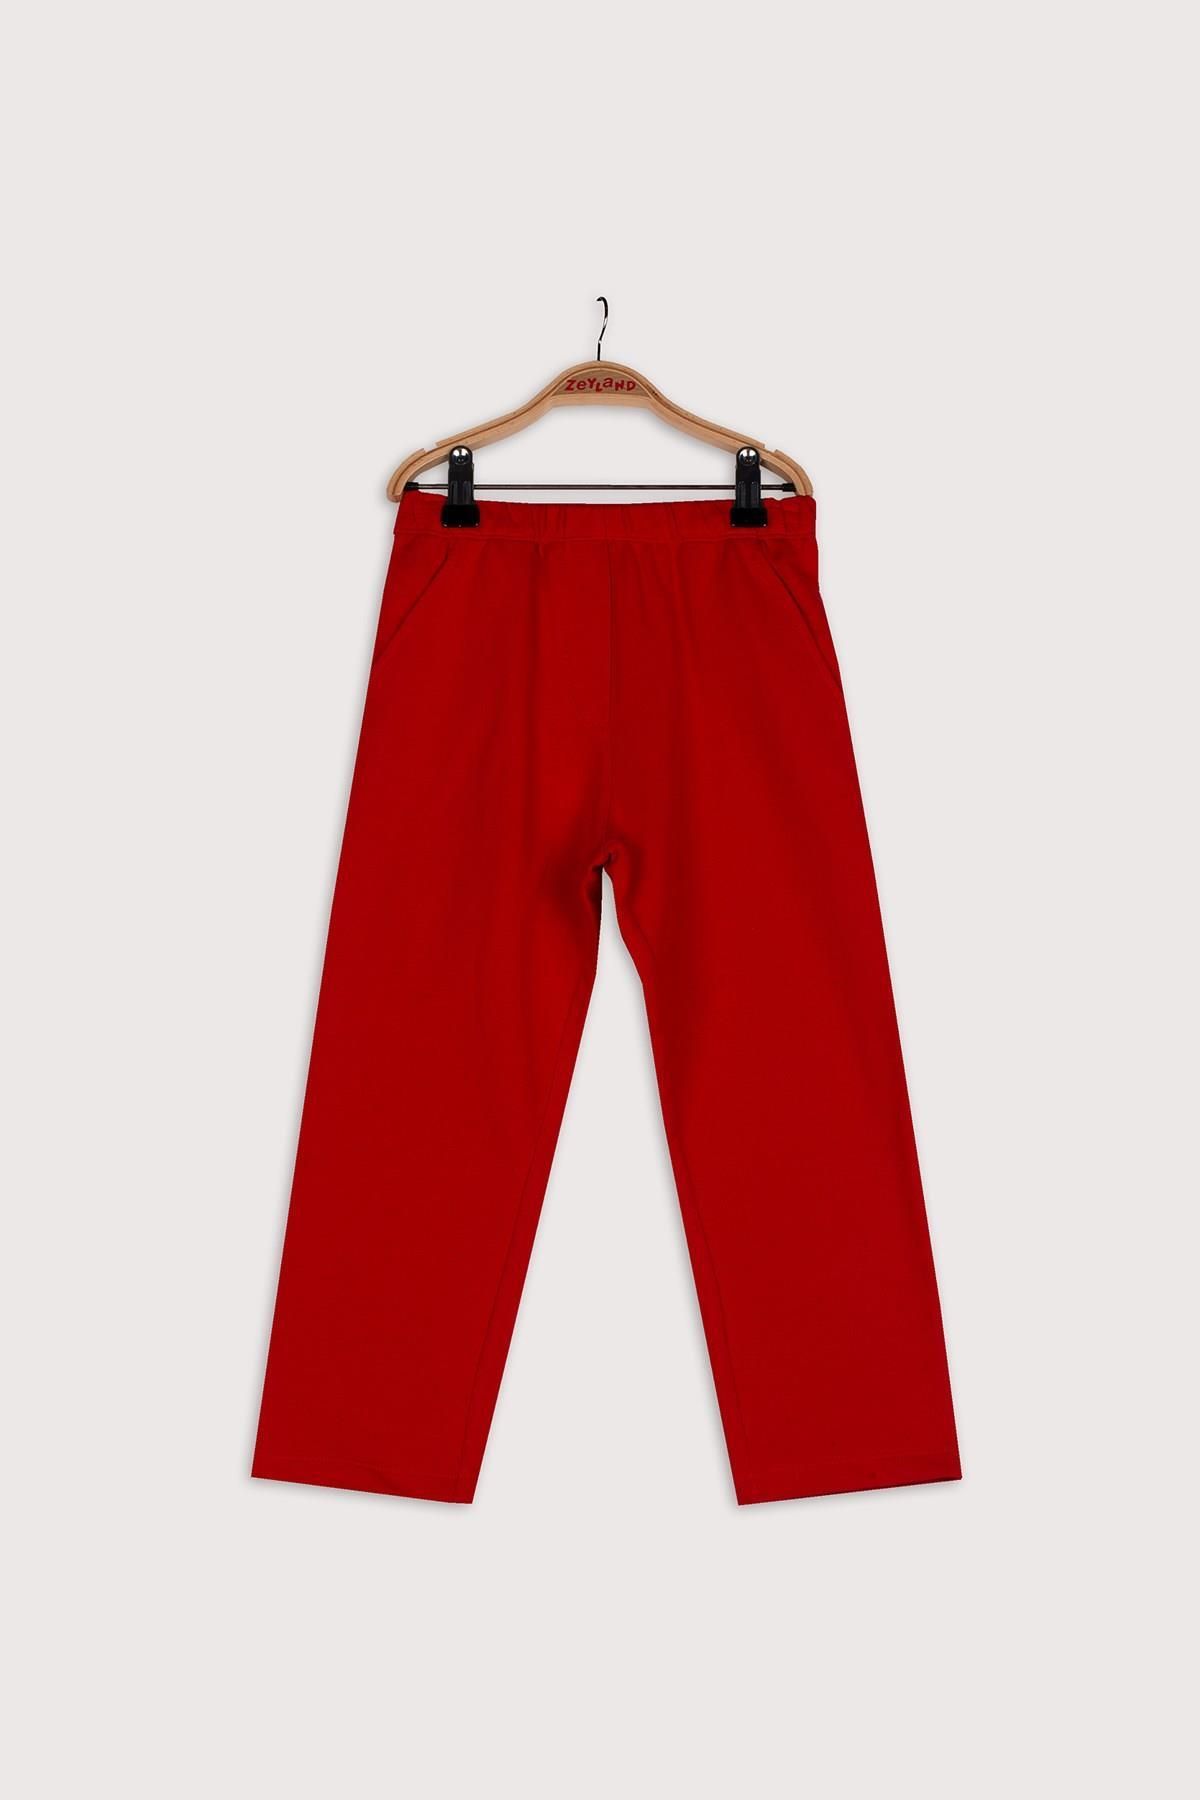 Zeyland Unisex Çocuk Kırmızı Örme Pantolon (4-12yaş)